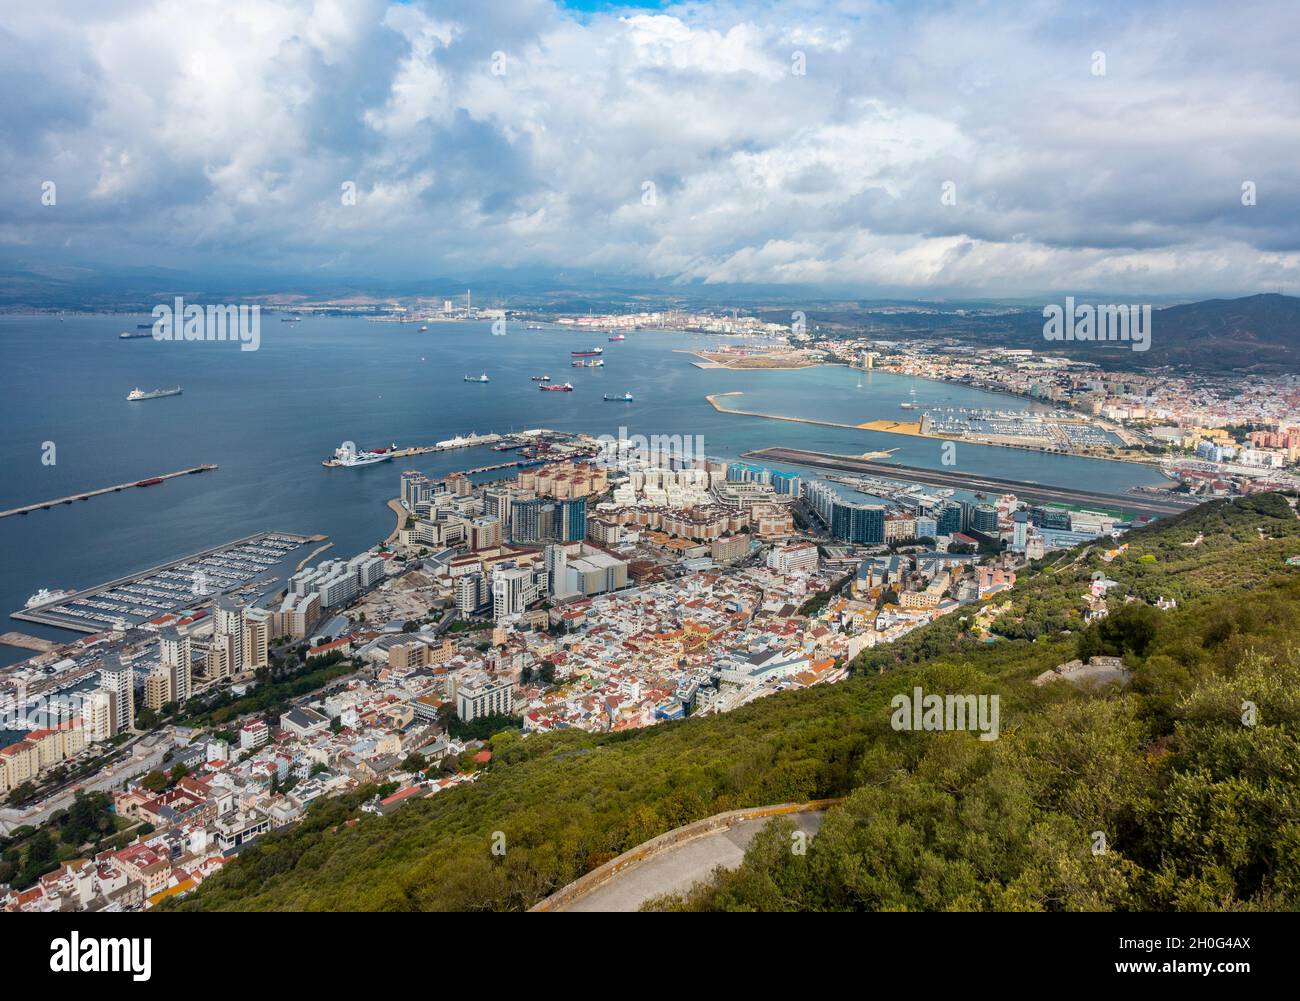 Vue depuis le sommet du rocher de Gibraltar, vue sur la baie de Gibraltar, une partie de la ville, la marina de Mid Harbour, la piste de l'aéroport, la marina d'Alcaidesa Banque D'Images